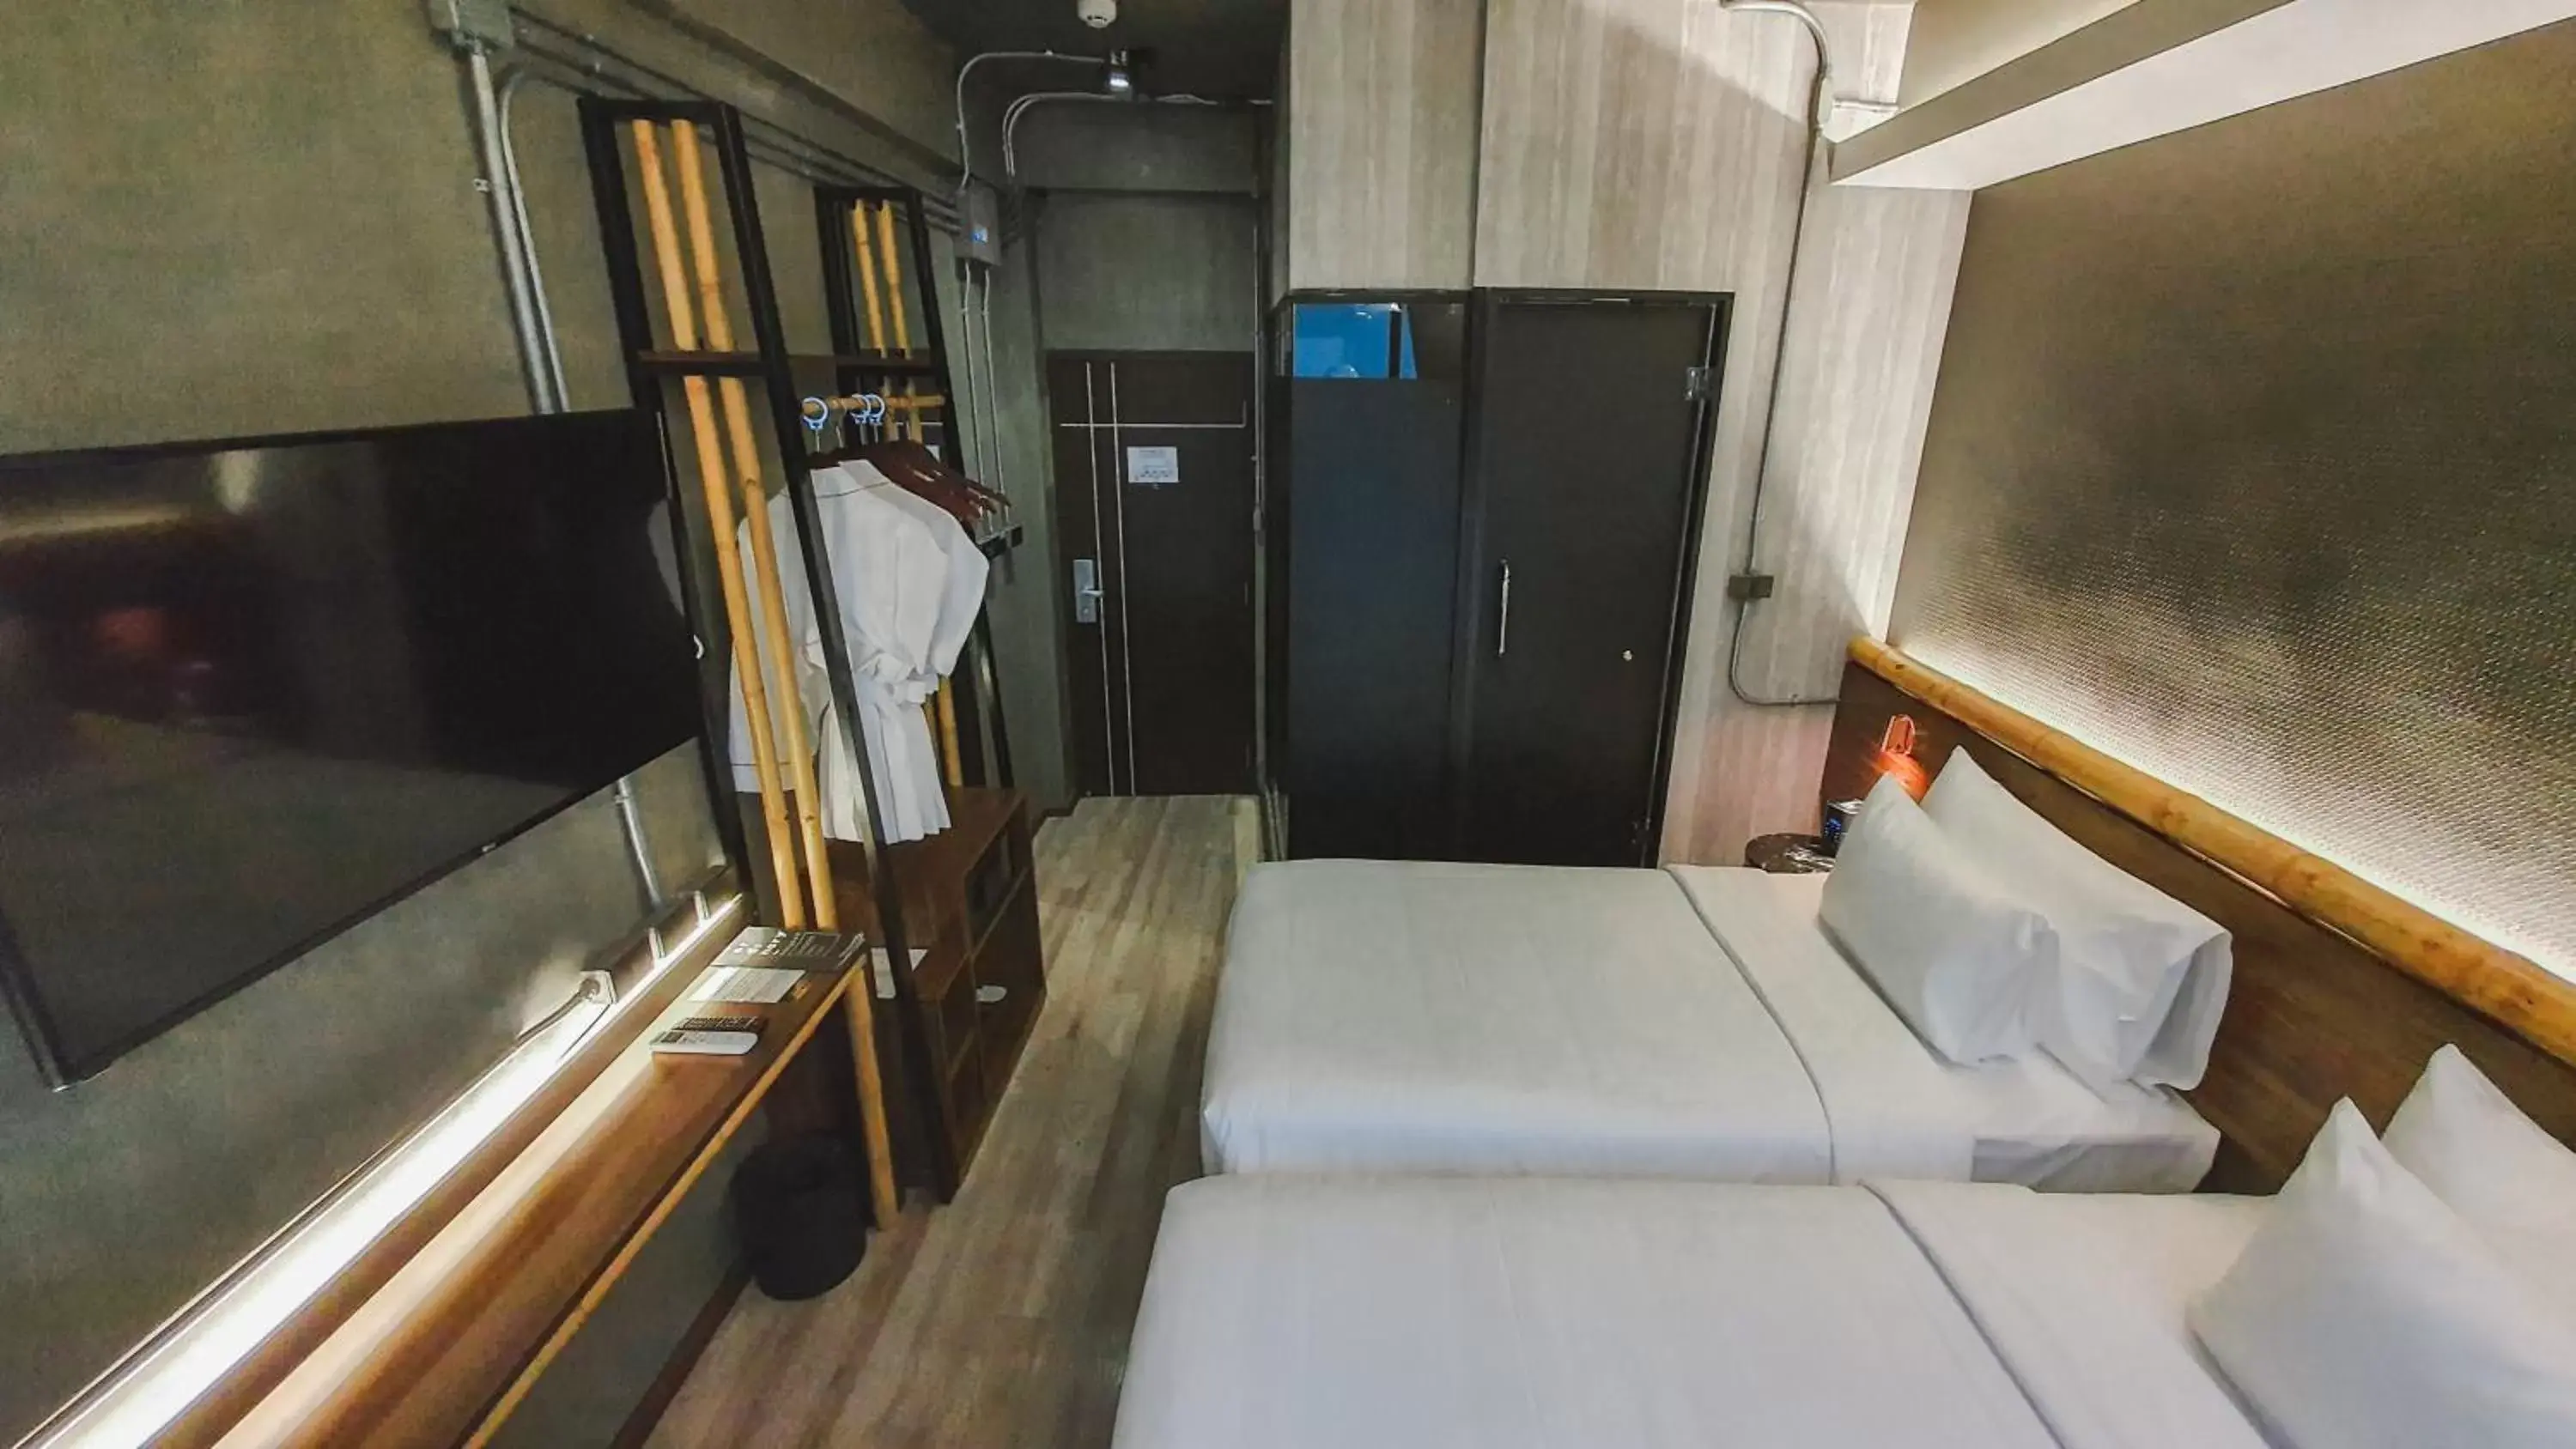 Bed in Hotel Ordinary Bangkok